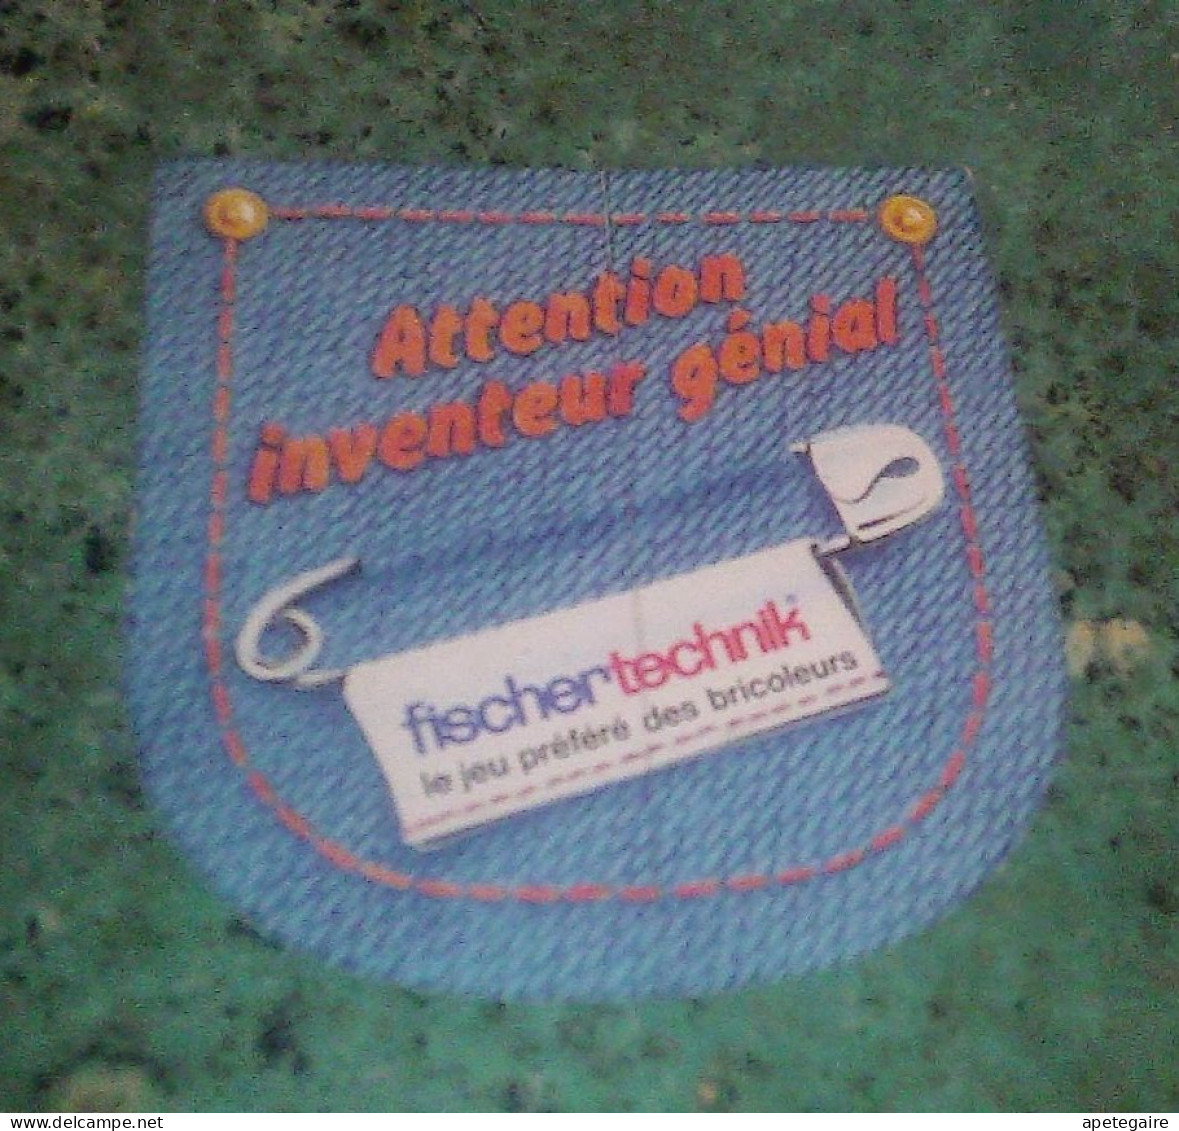 Autocollant Année 70  Vintage Jeux De Société Fischer Technik Le Jeu Préféré Des Bricoleurs - Stickers